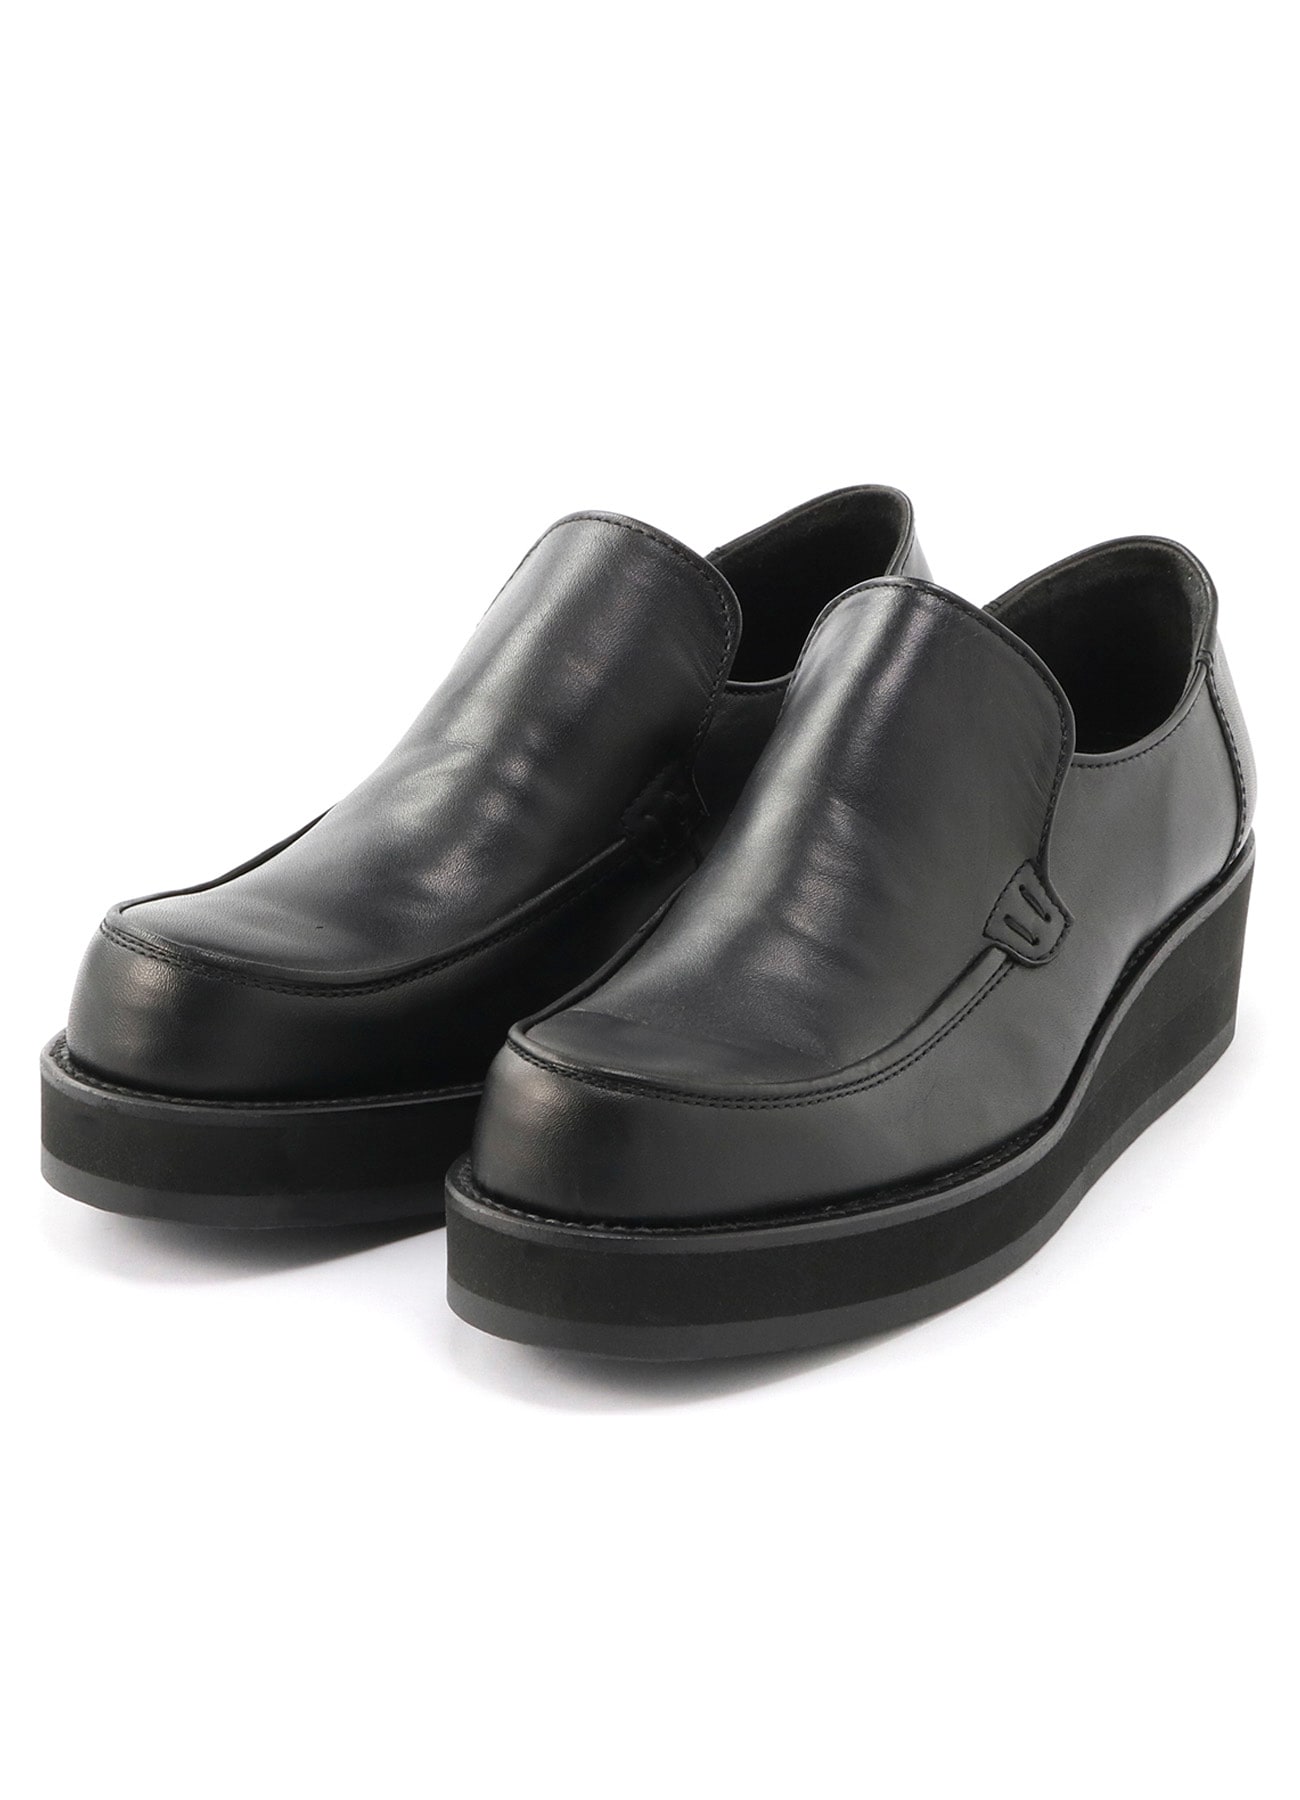 Smooth leather platform slip-on (US 5.5 Black): Y's ｜ THE SHOP 